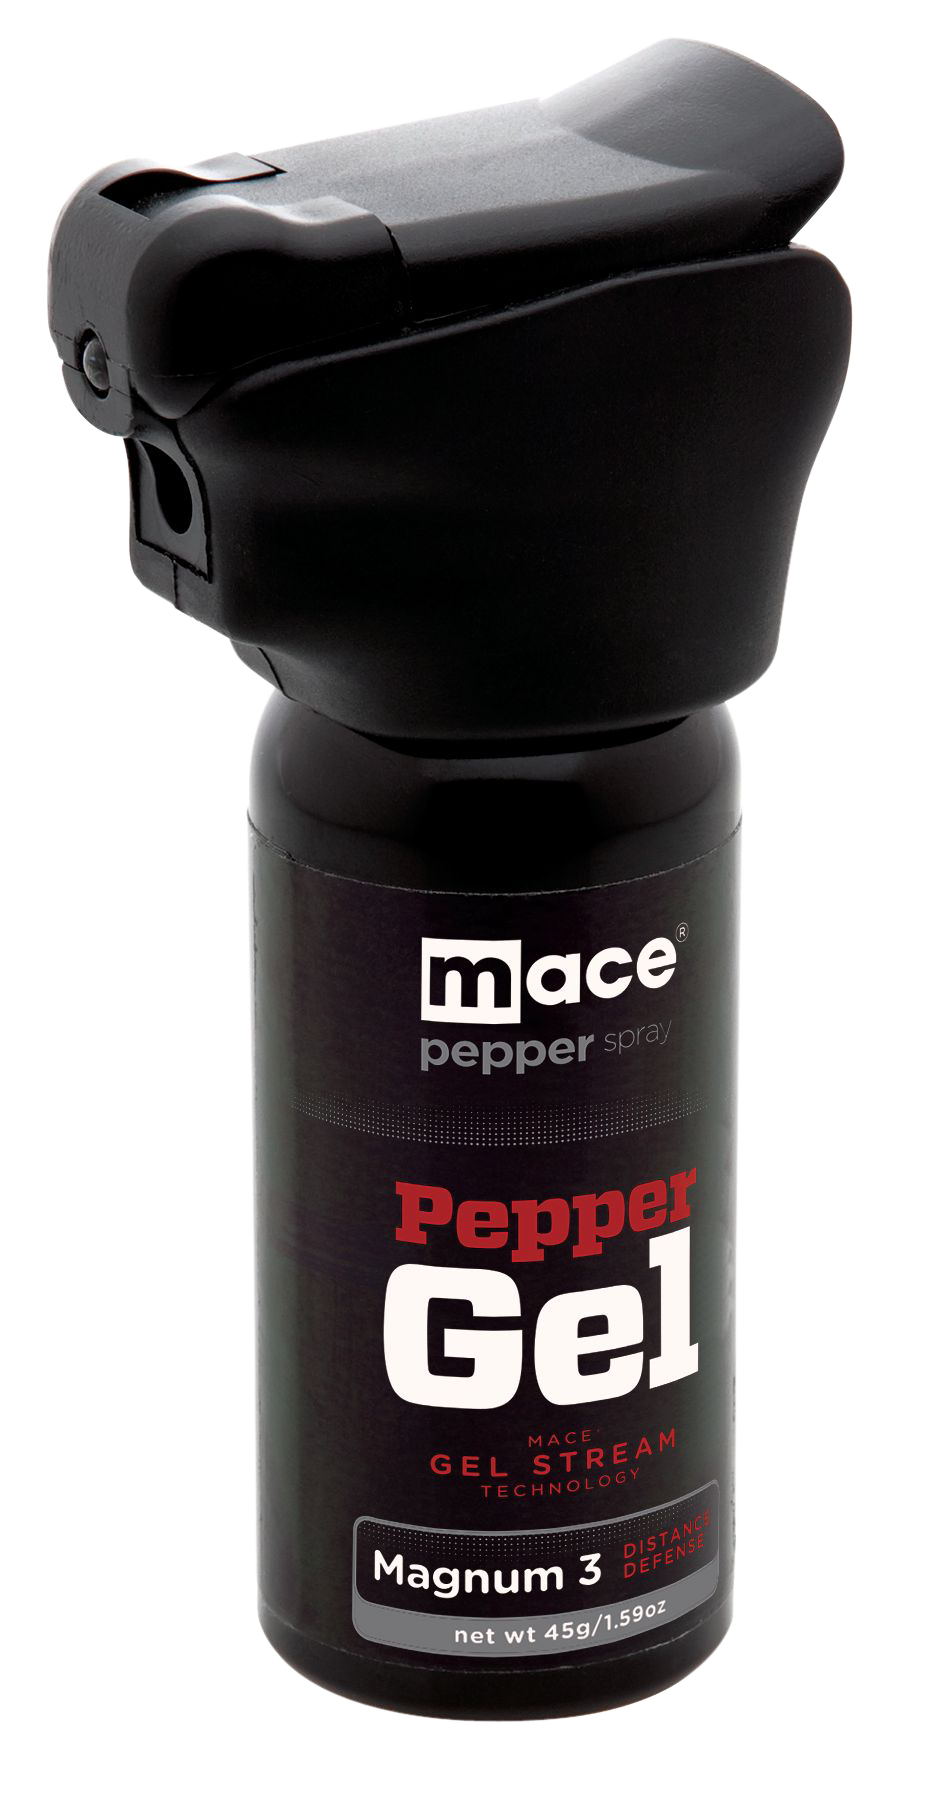 Mace Night Defender Pepper Spray Gel 45 G. W/ Led Light